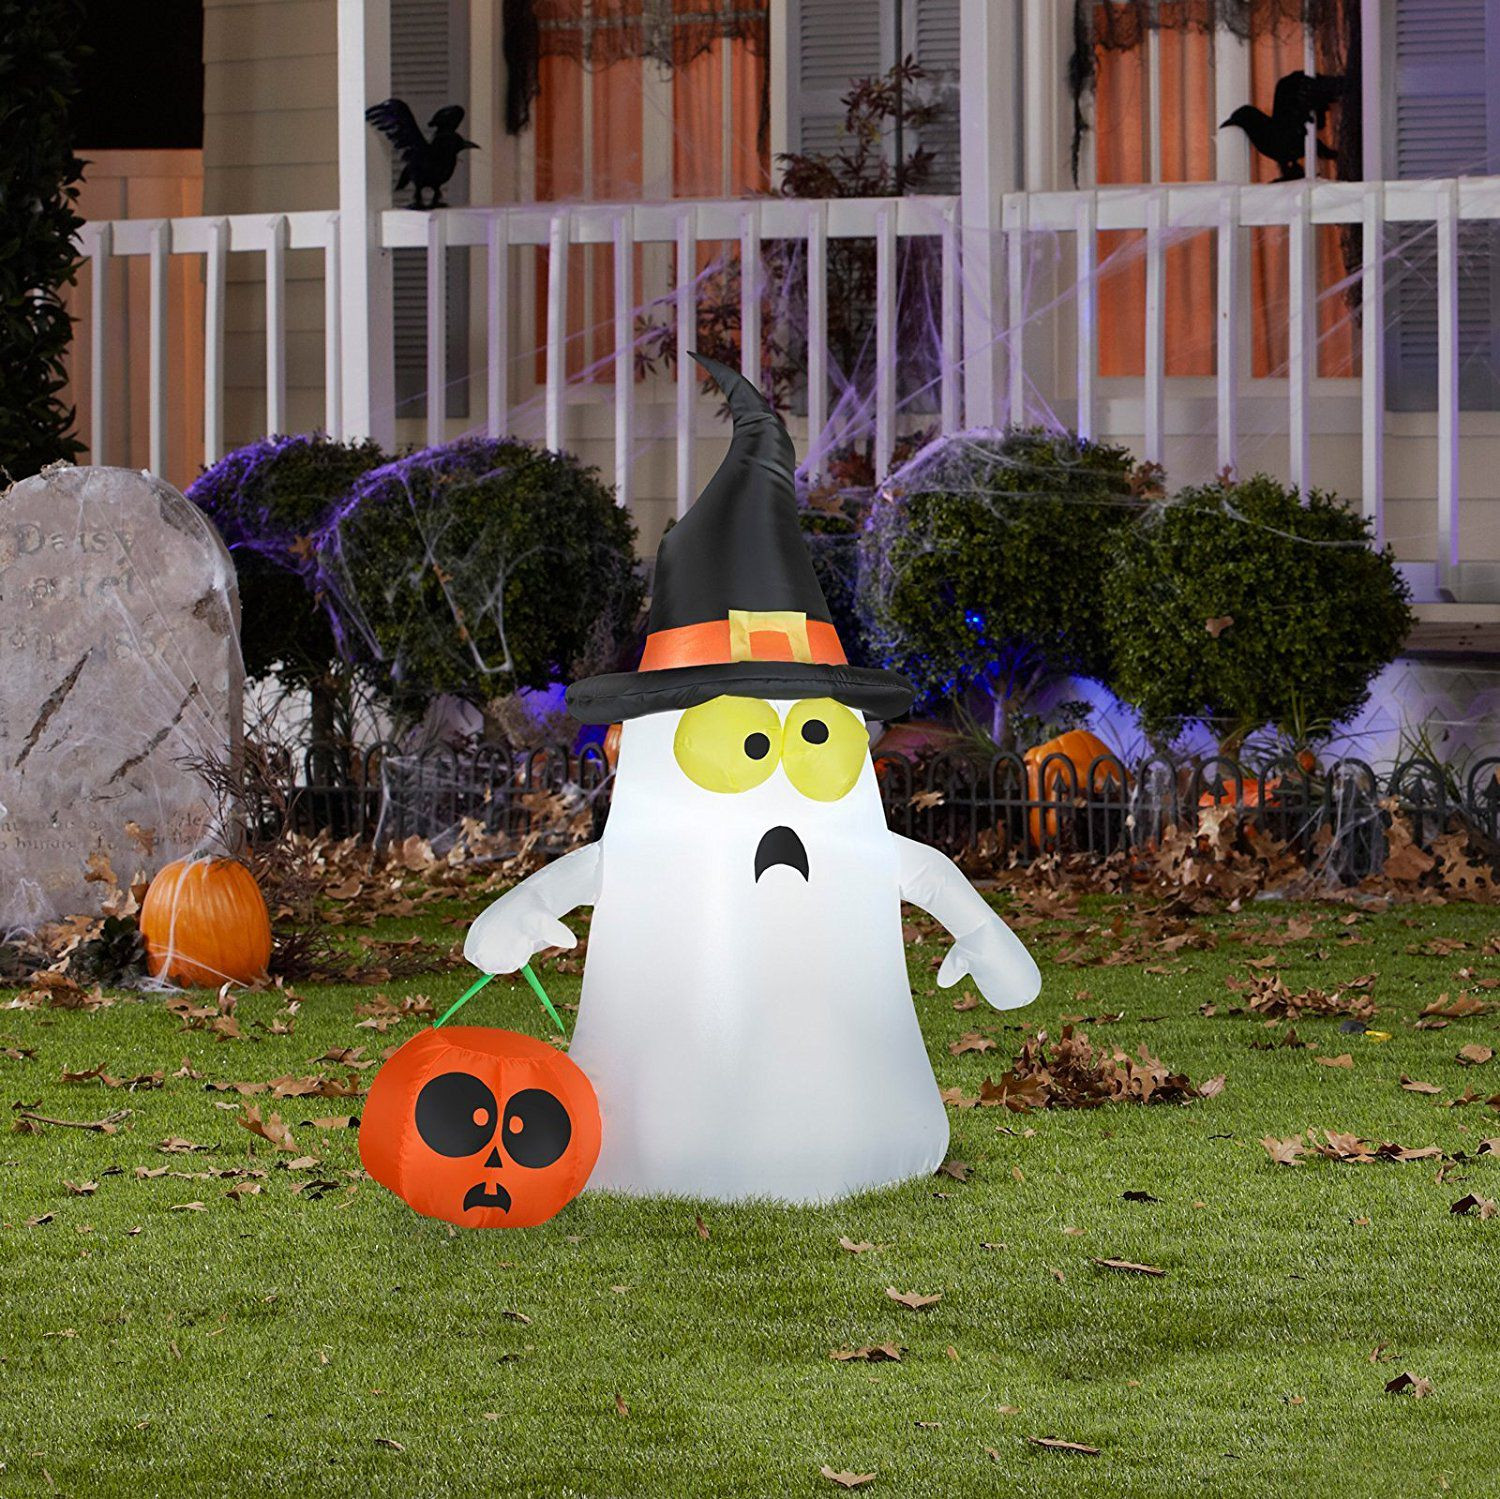 Outdoor Halloween Decor
 The 8 Best Outdoor Halloween Decorations to Buy in 2018